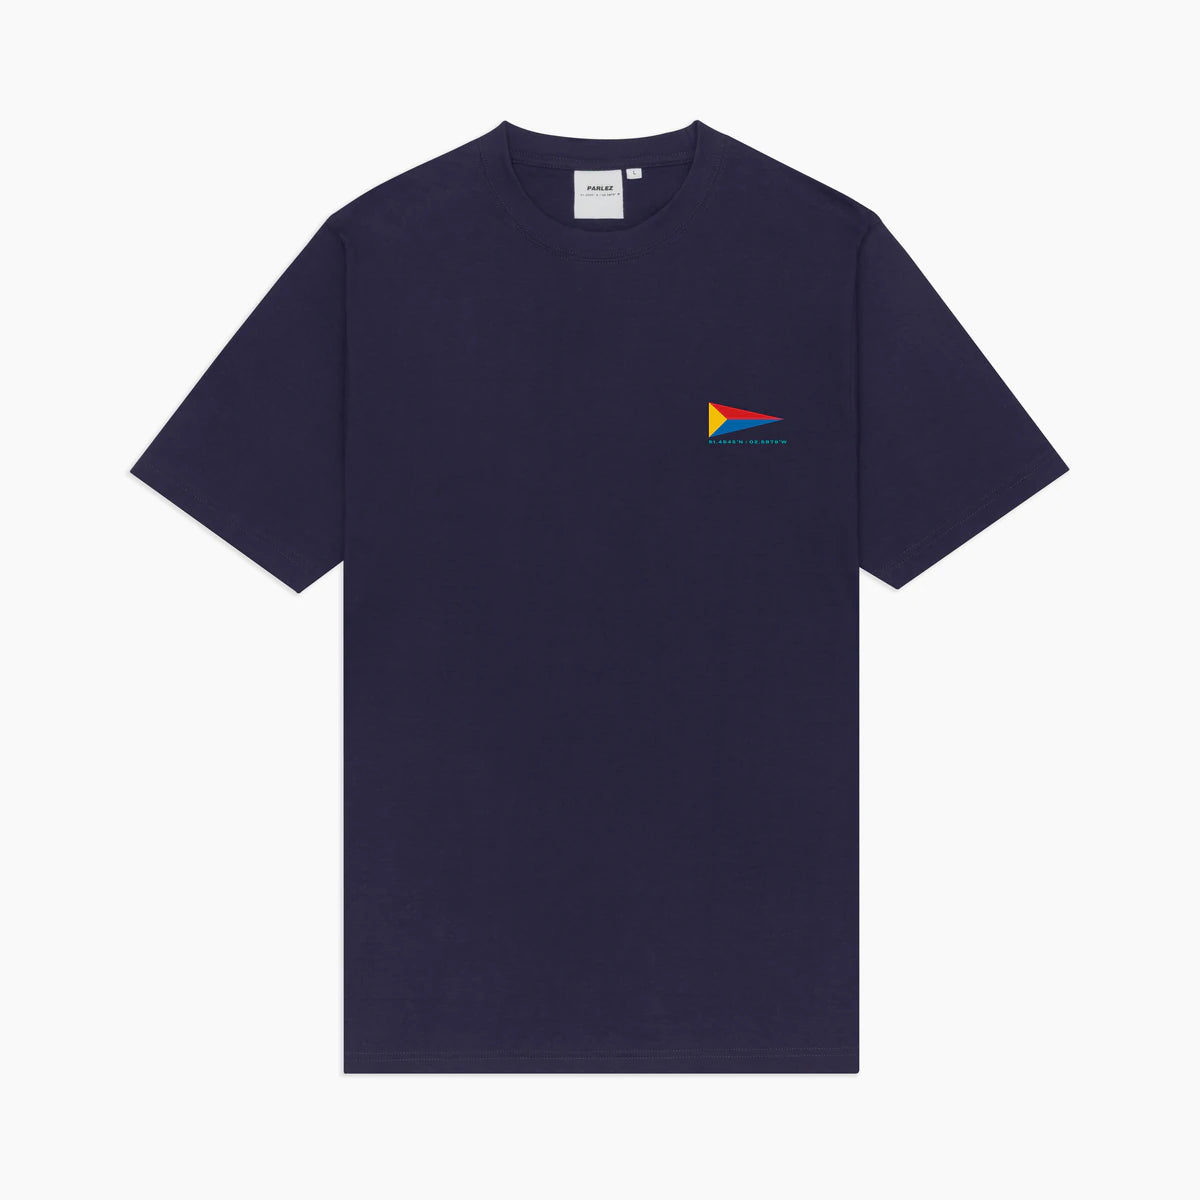 Parlez - Club T-Shirt - Navy